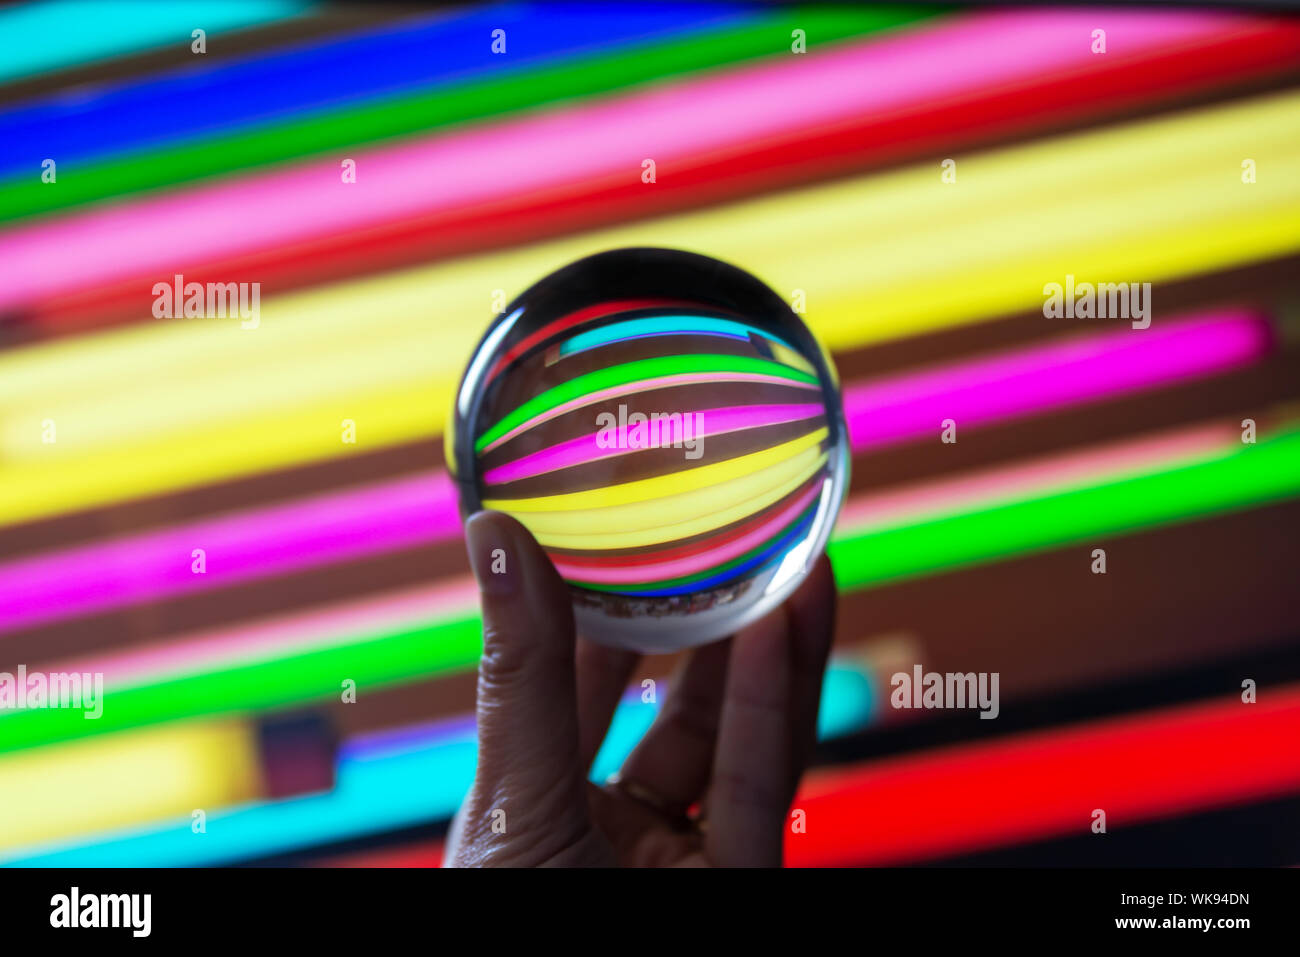 Reflexionen von farbigen Leuchtstoffröhren in eine Kristallkugel. Astract bunte Fotografie. Stockfoto